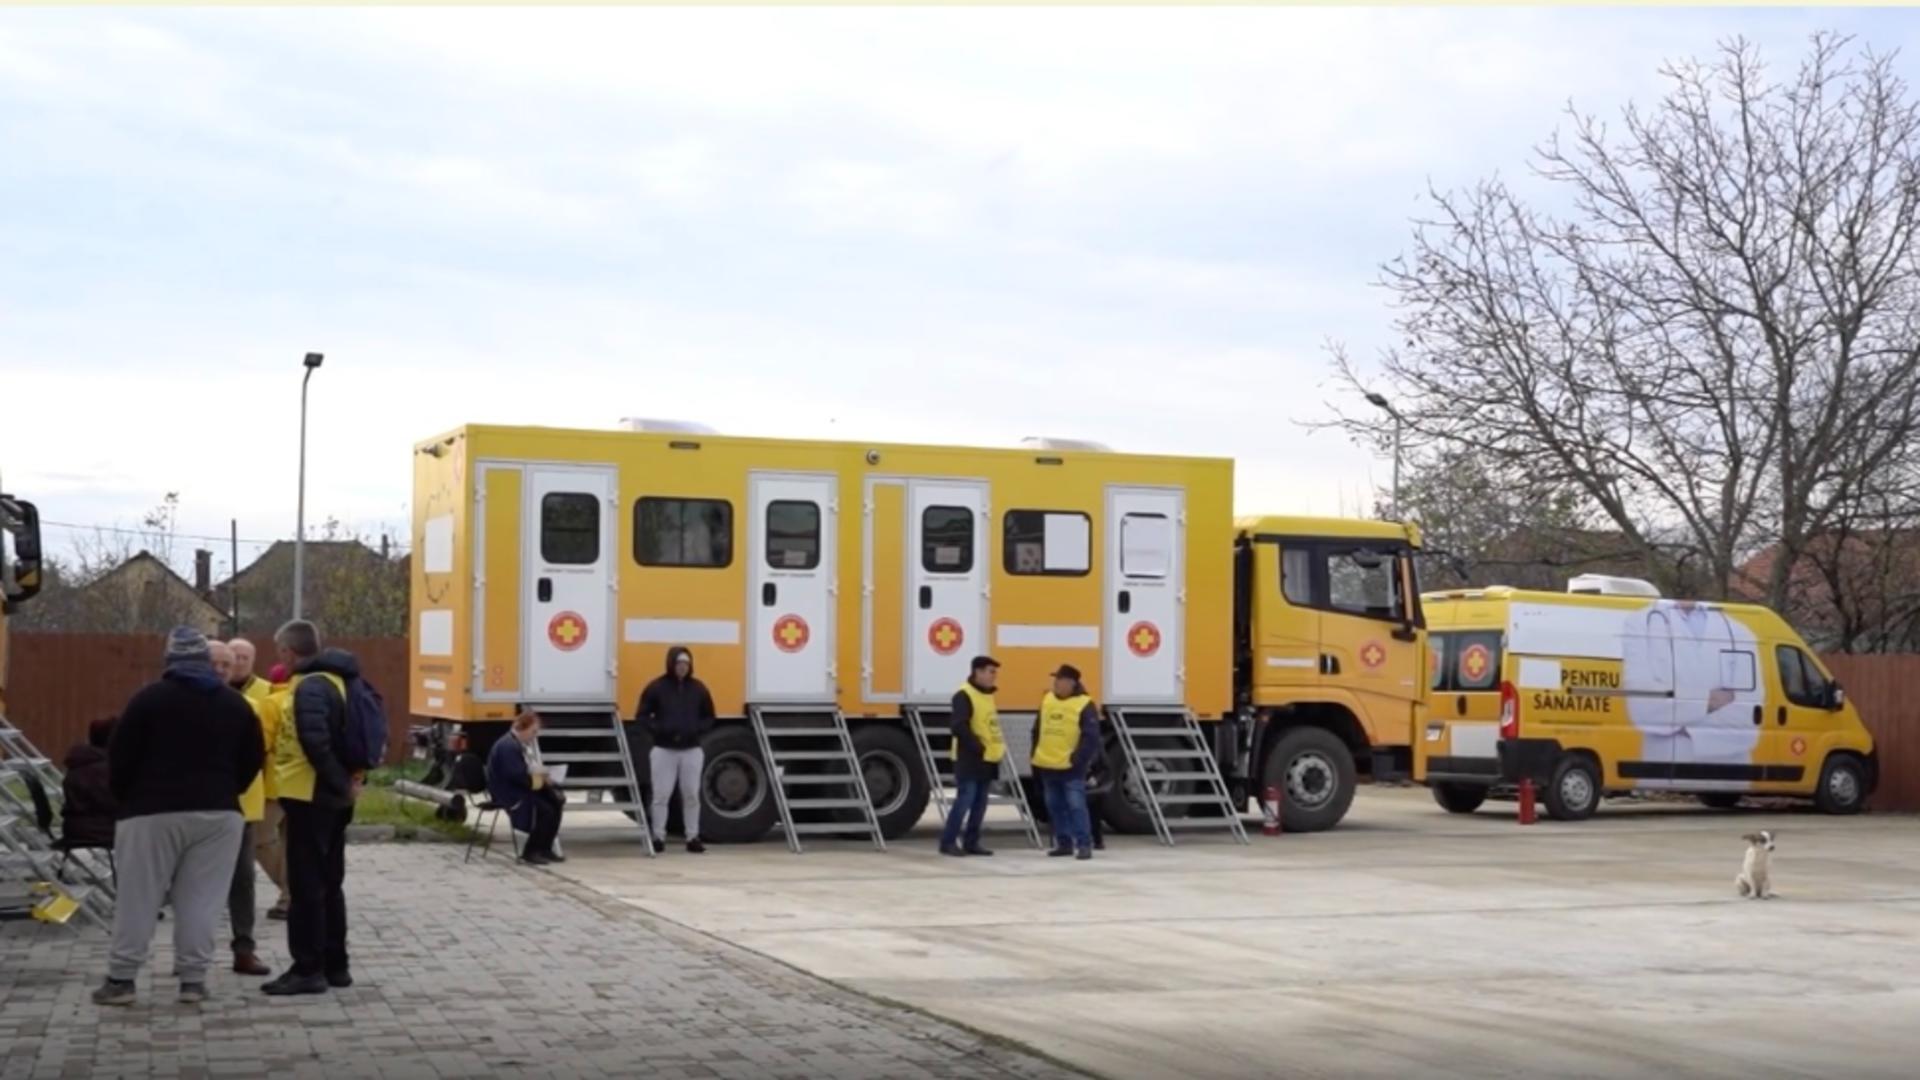 Caravana medicală “România Suverană” a ajuns în Constanța: mii de români au fost ajutați de spitalul mobil